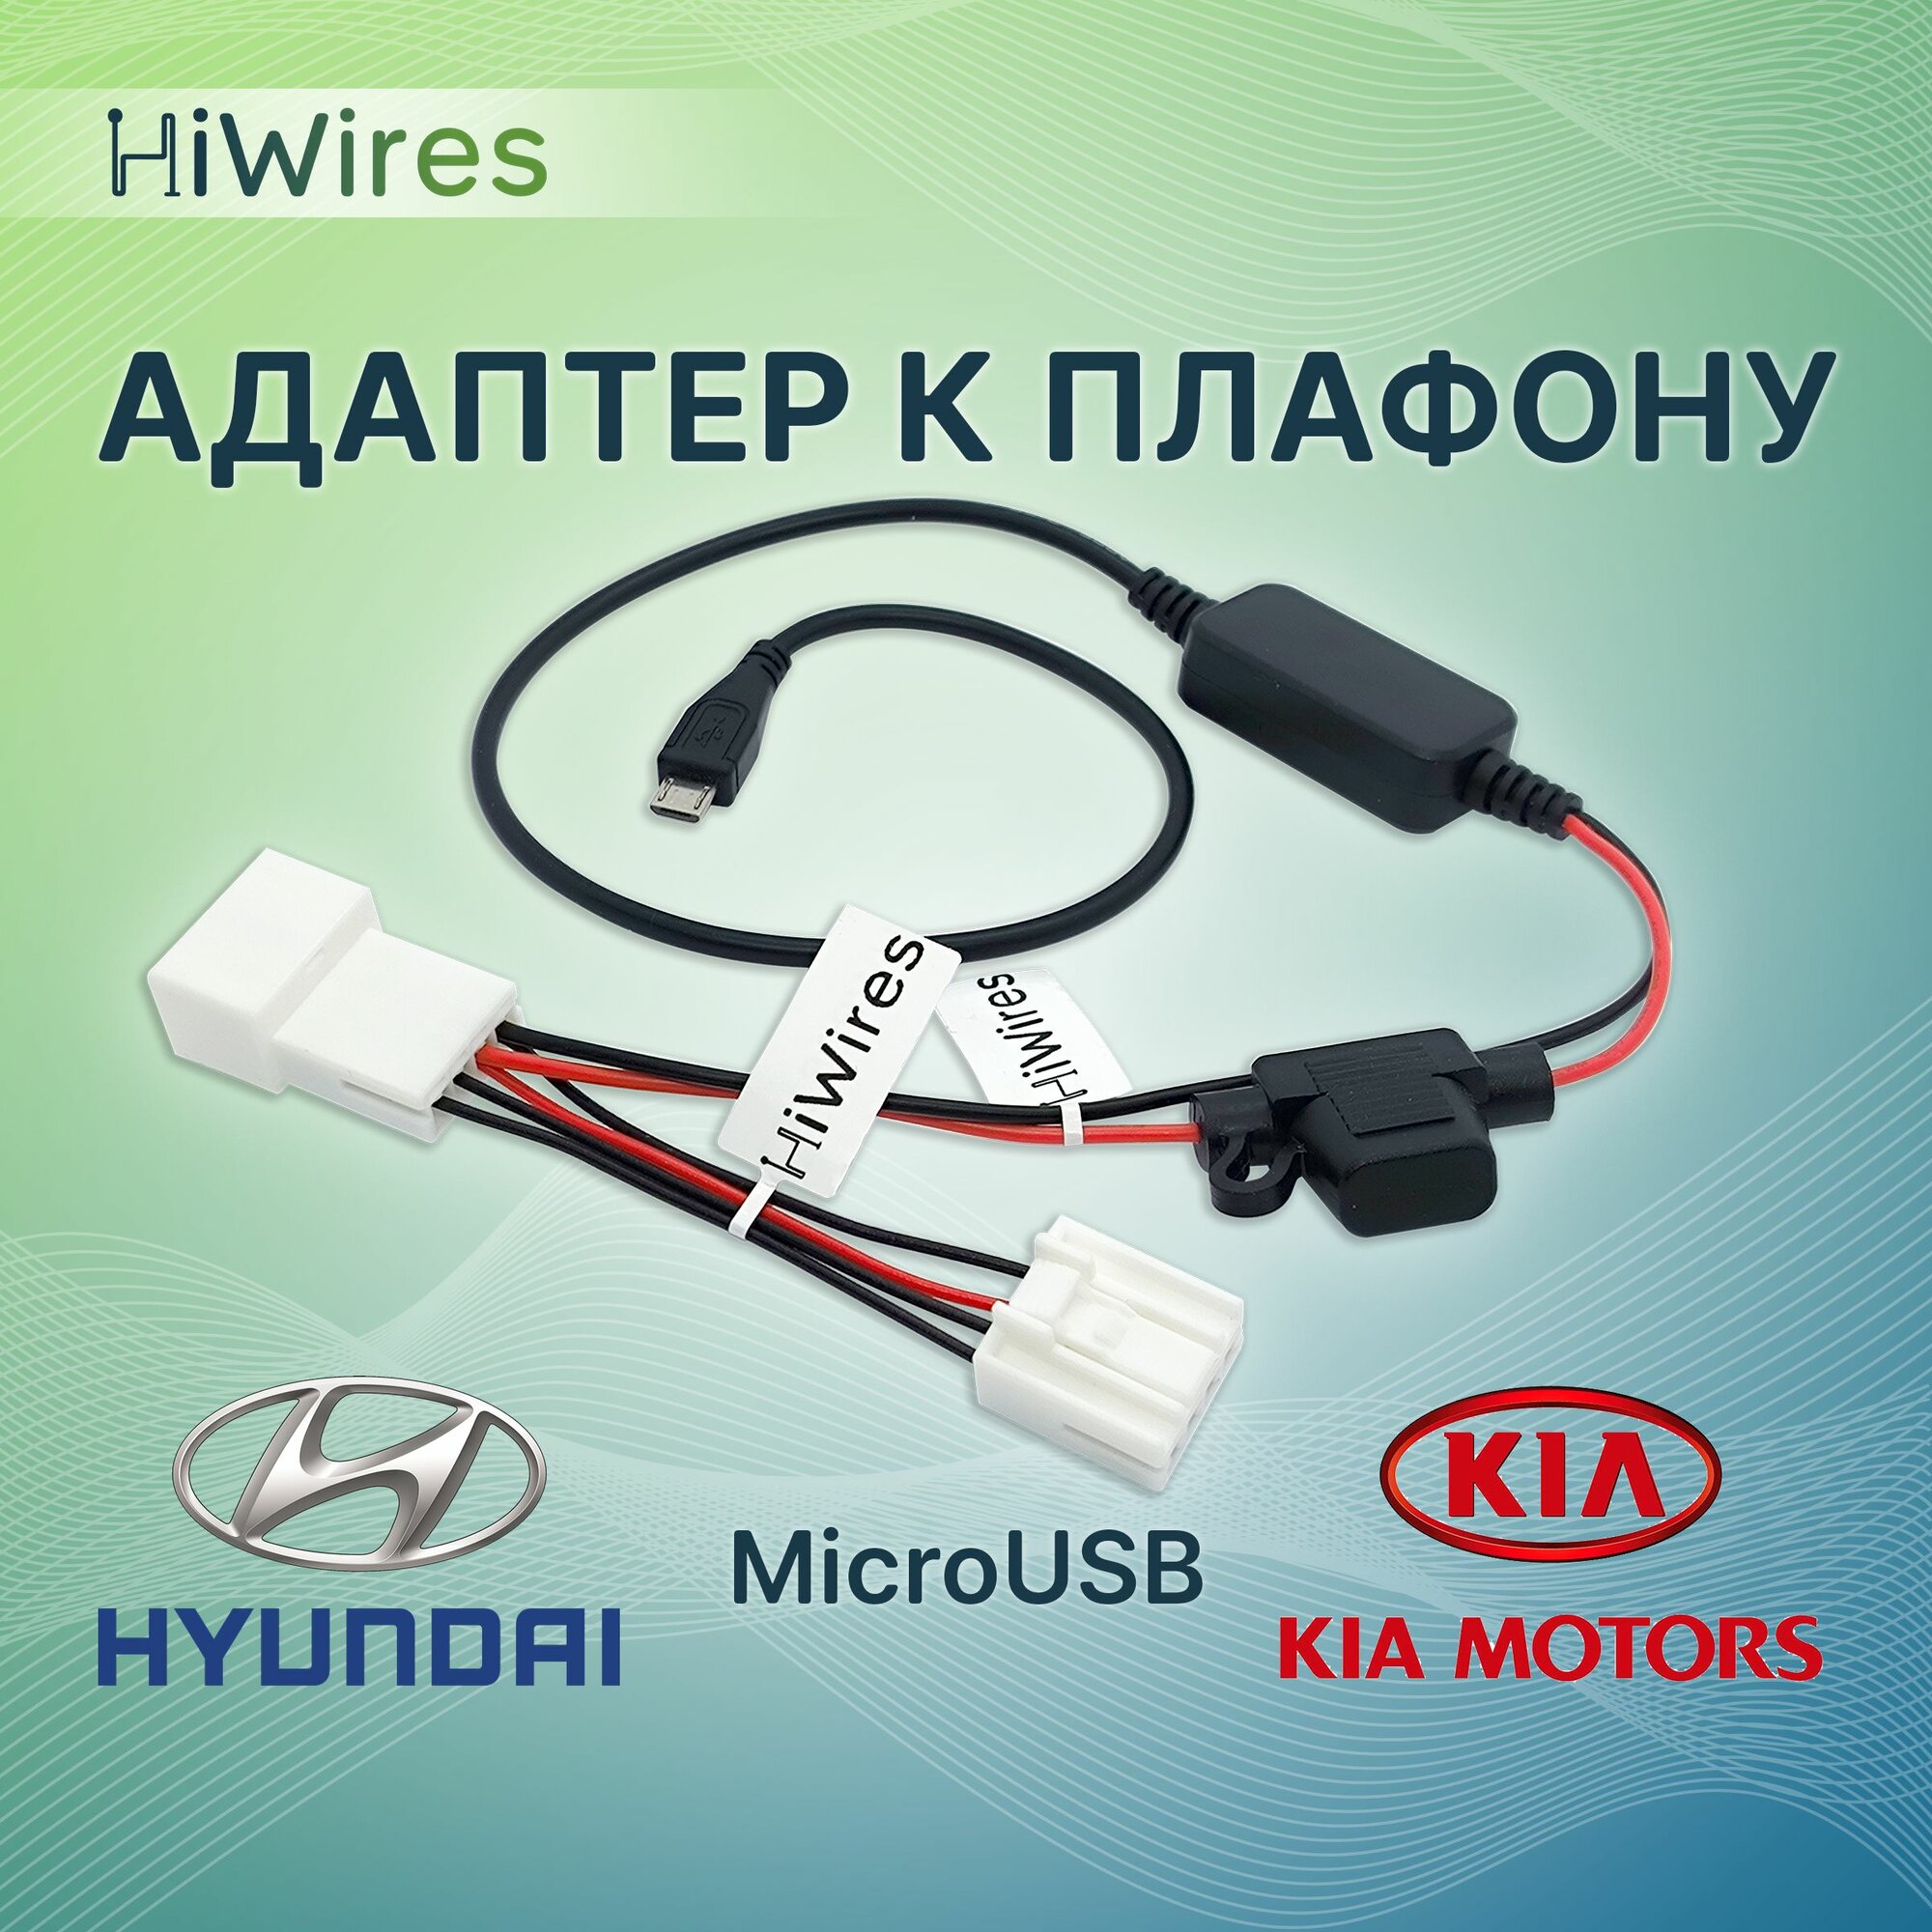 Адаптер к плафону Kia Hyundai с MicroUSB